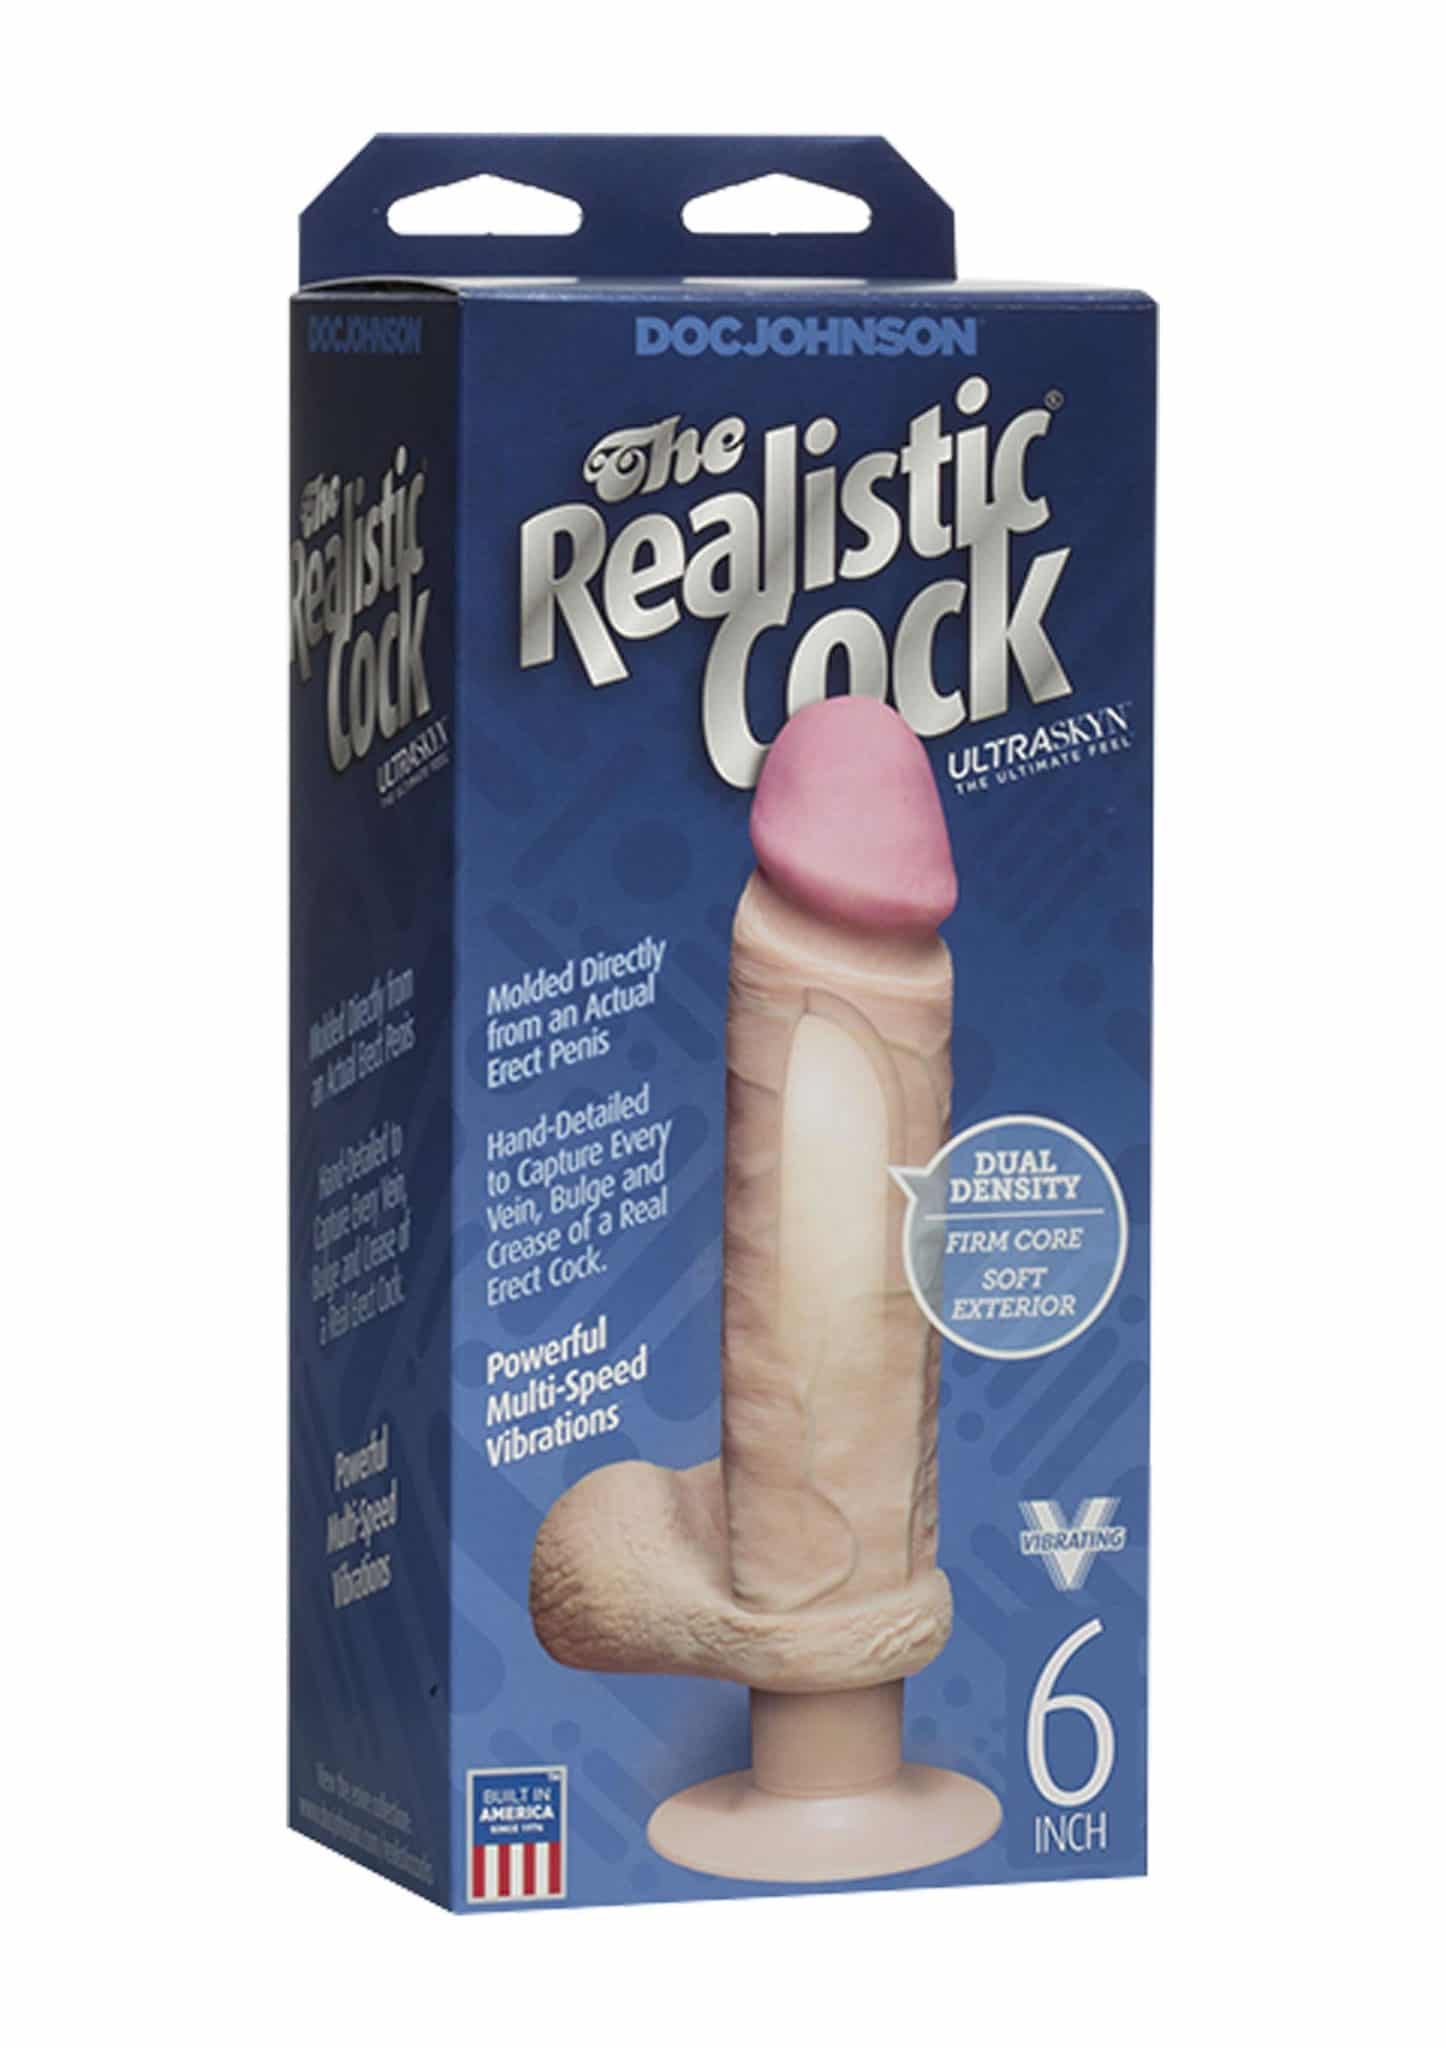 15 CM Realistic Cock Vibro